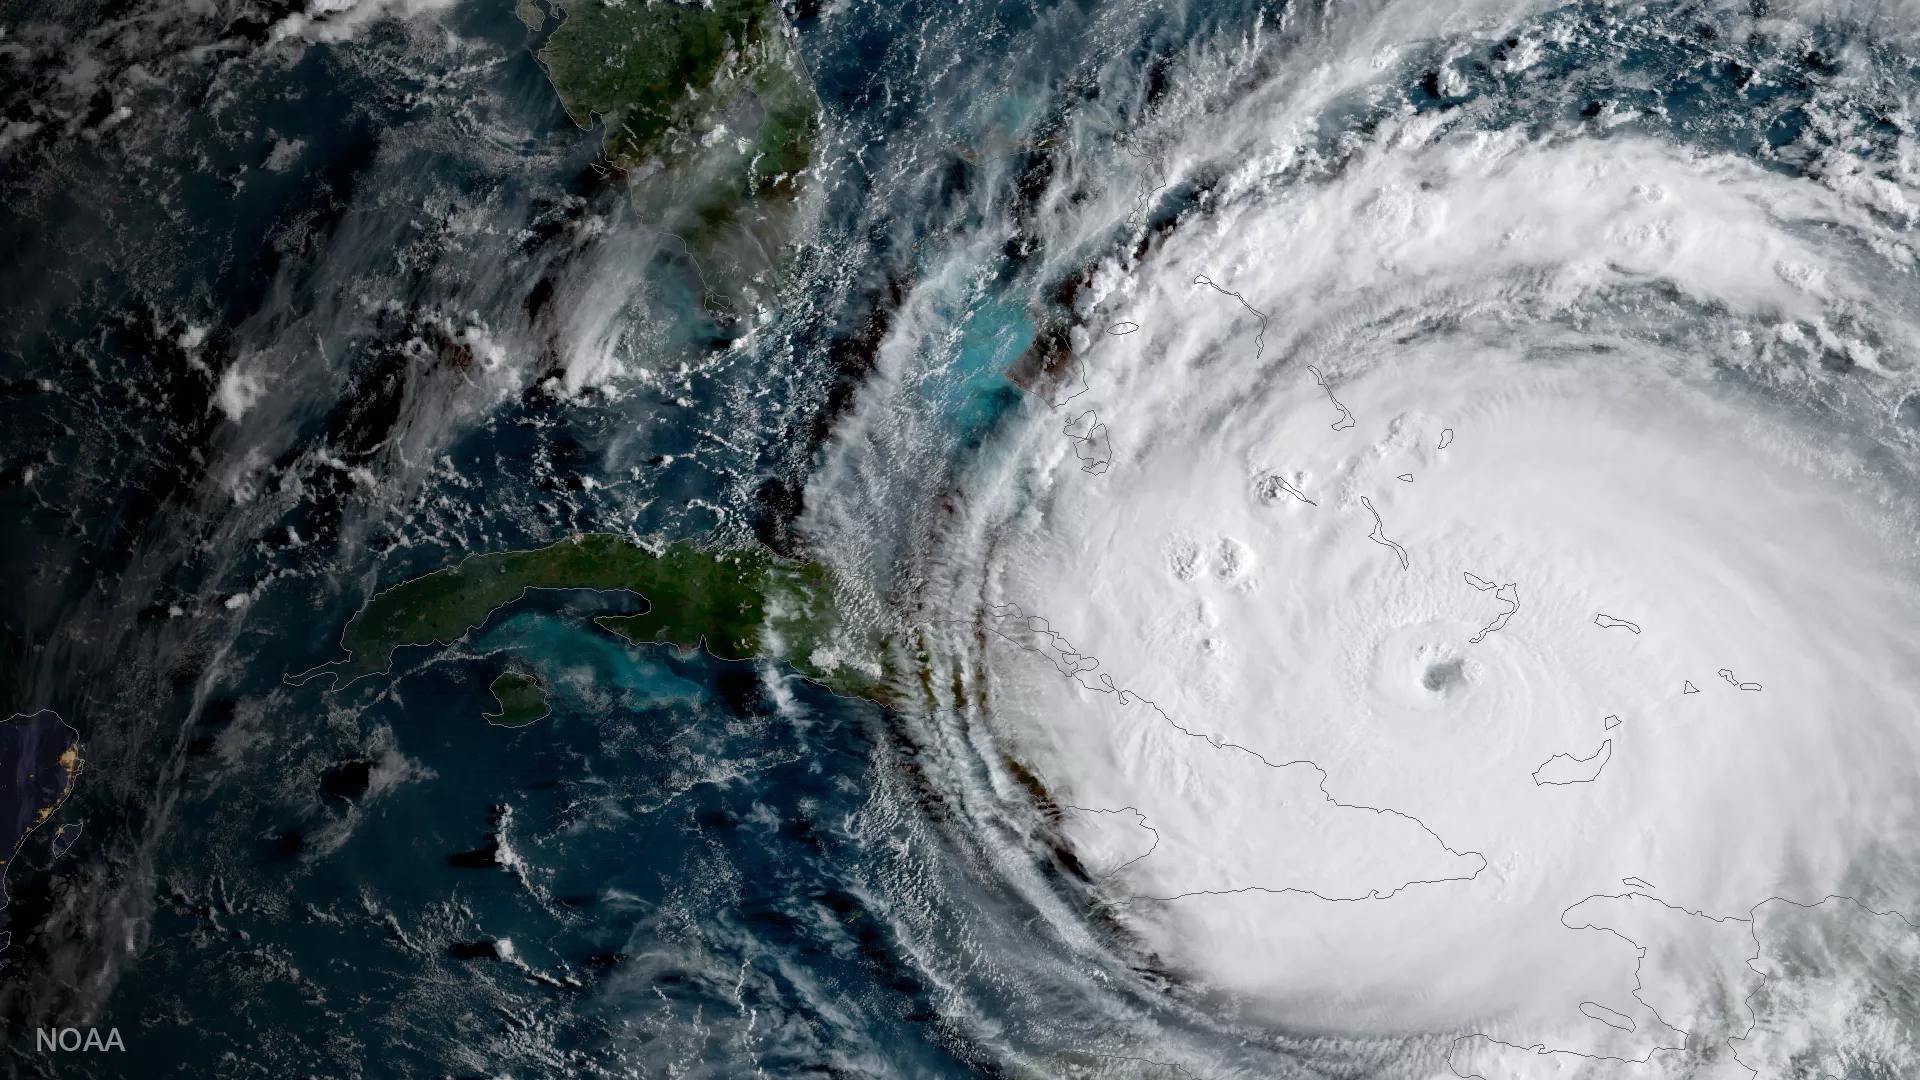 Image of Hurricane Irma